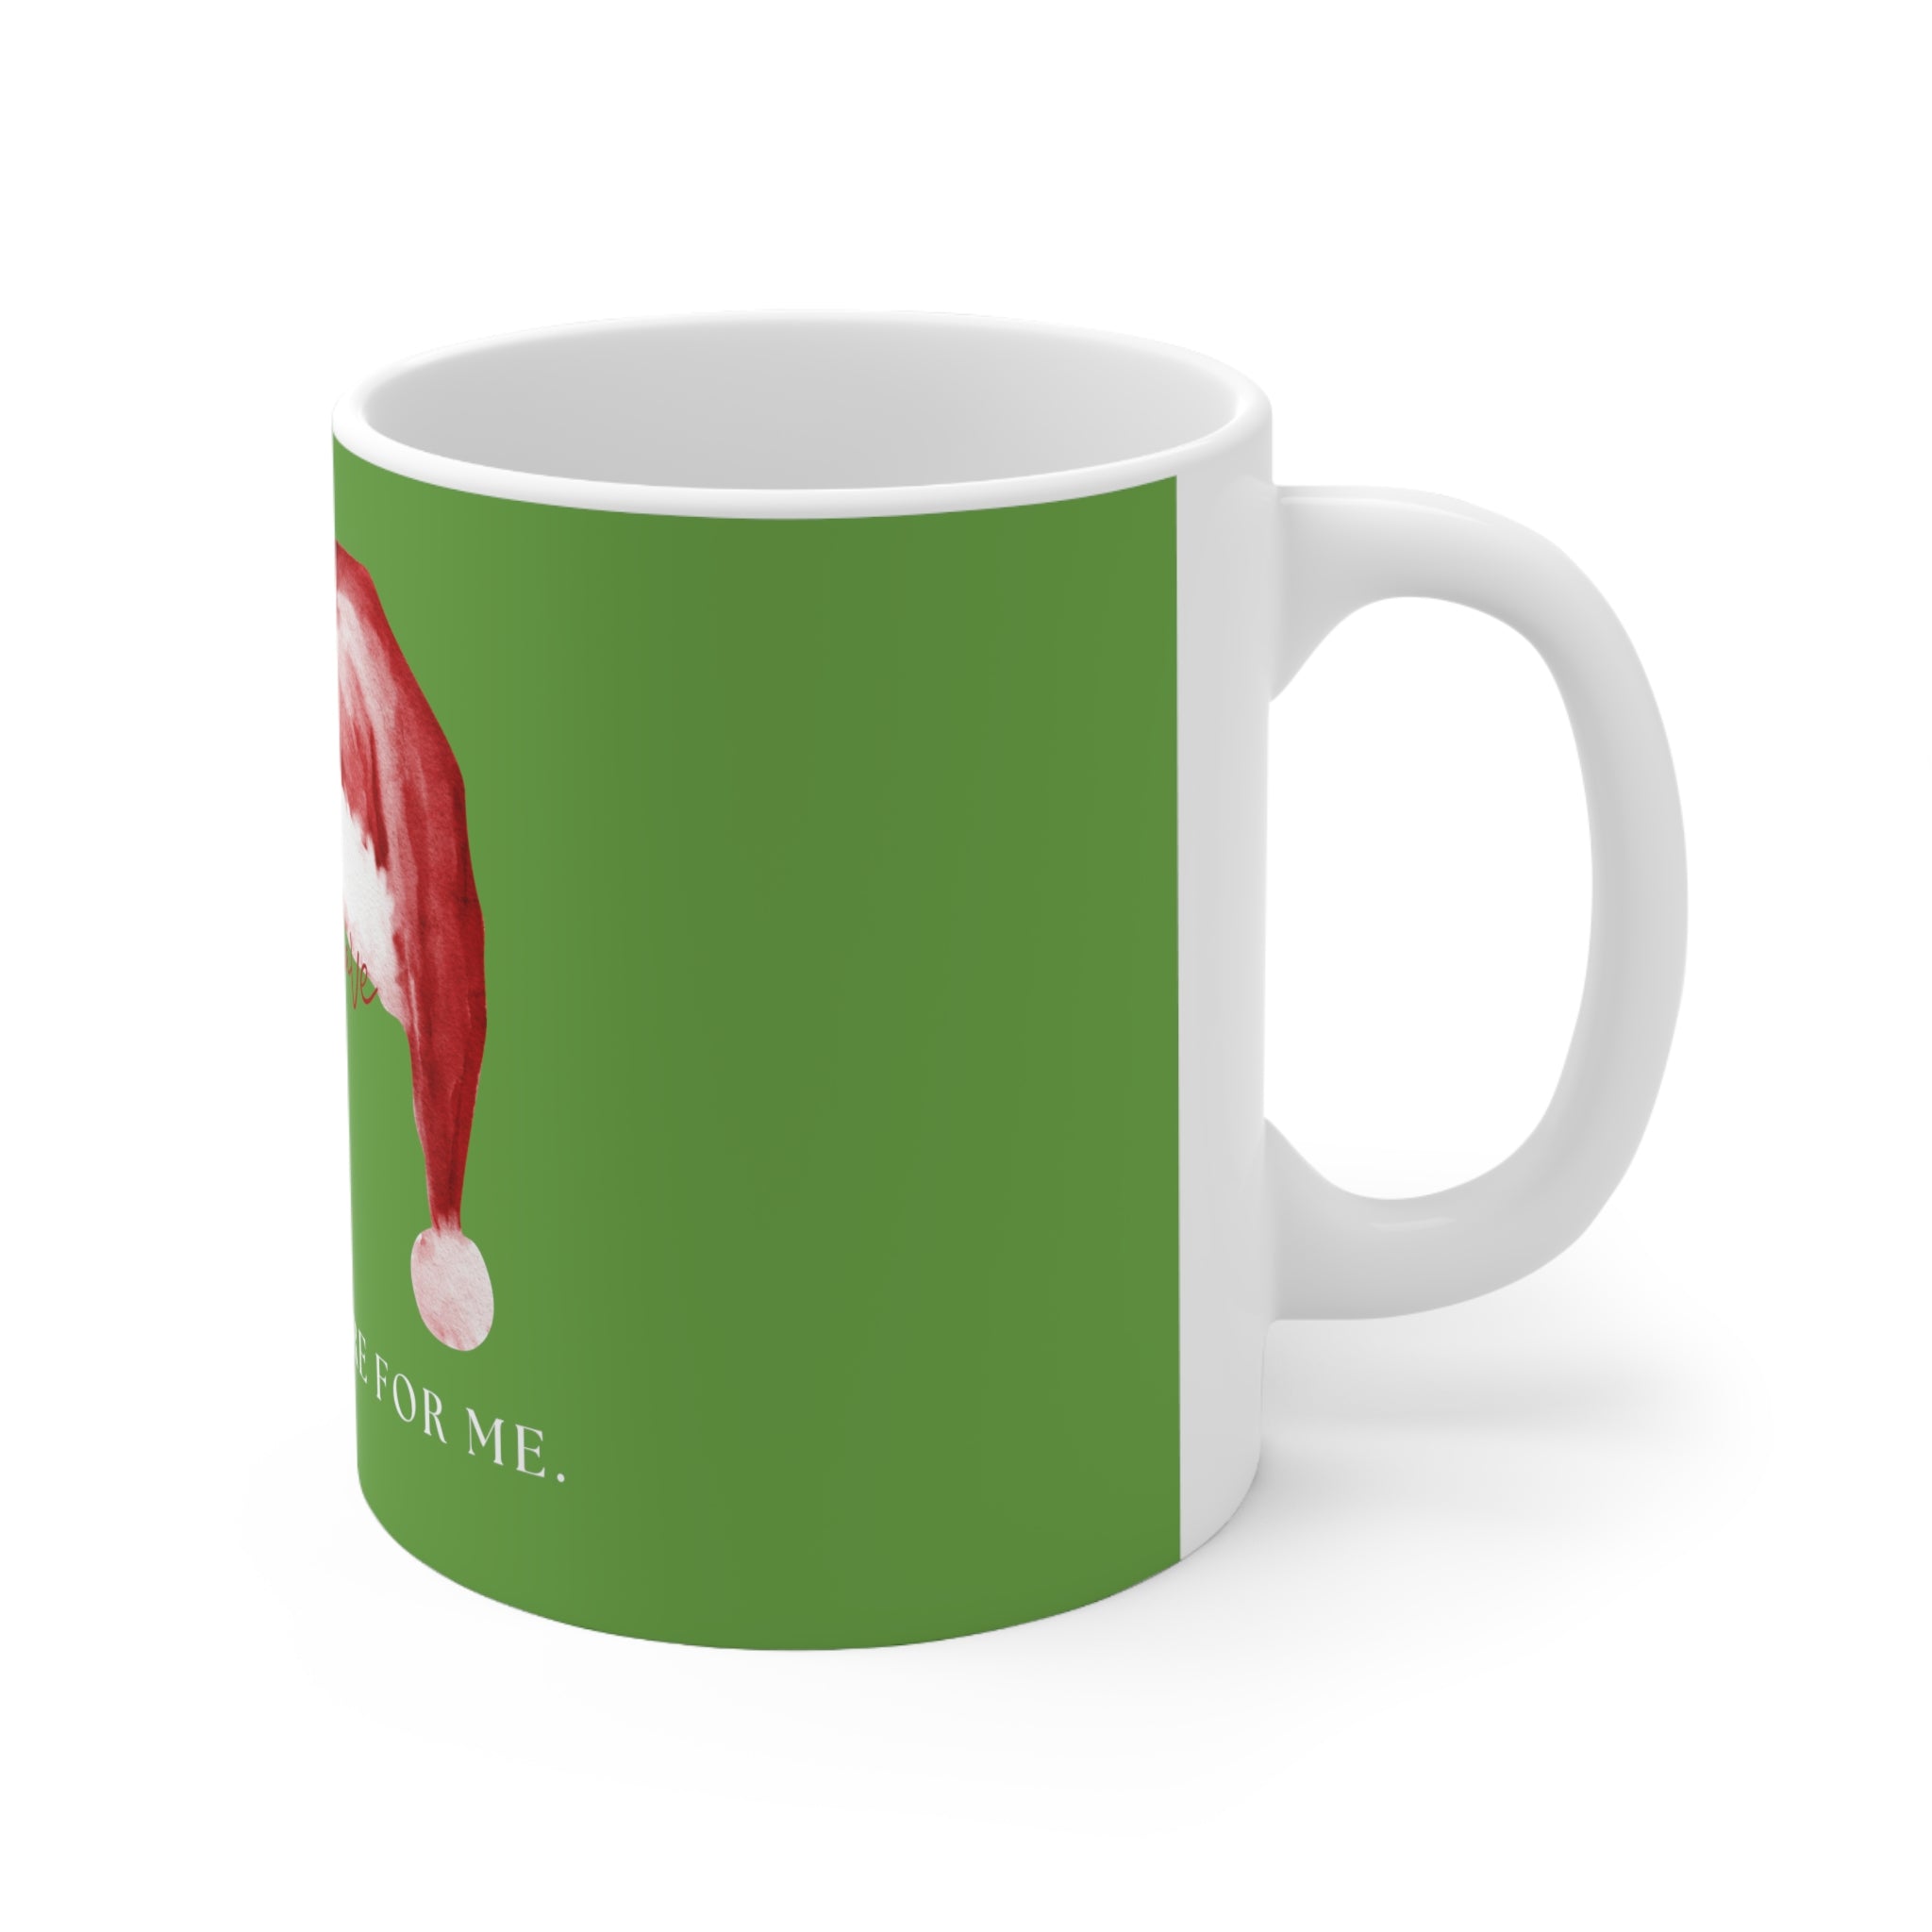 Ceramic Mug 11oz - Santa's Milk & Cookies - Green